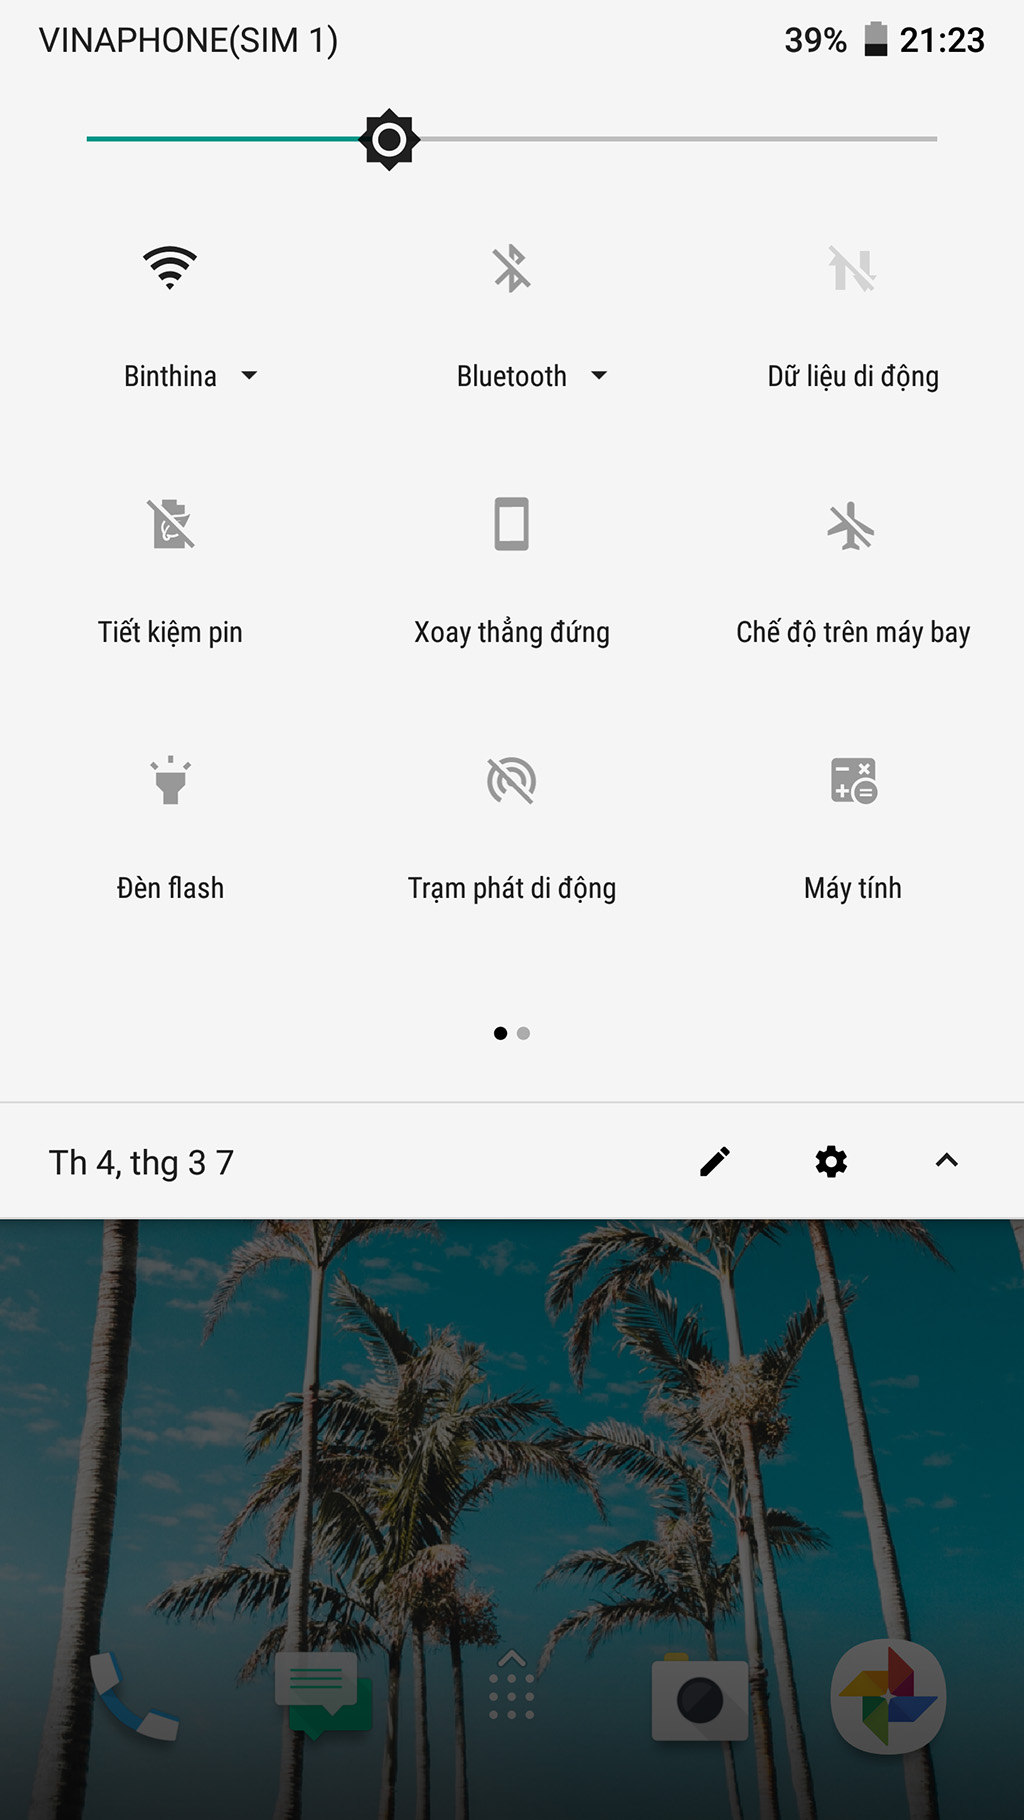 HTC U Ultra chính thức nhận
bản cập nhật Android 8.0 Oreo tại Việt Nam